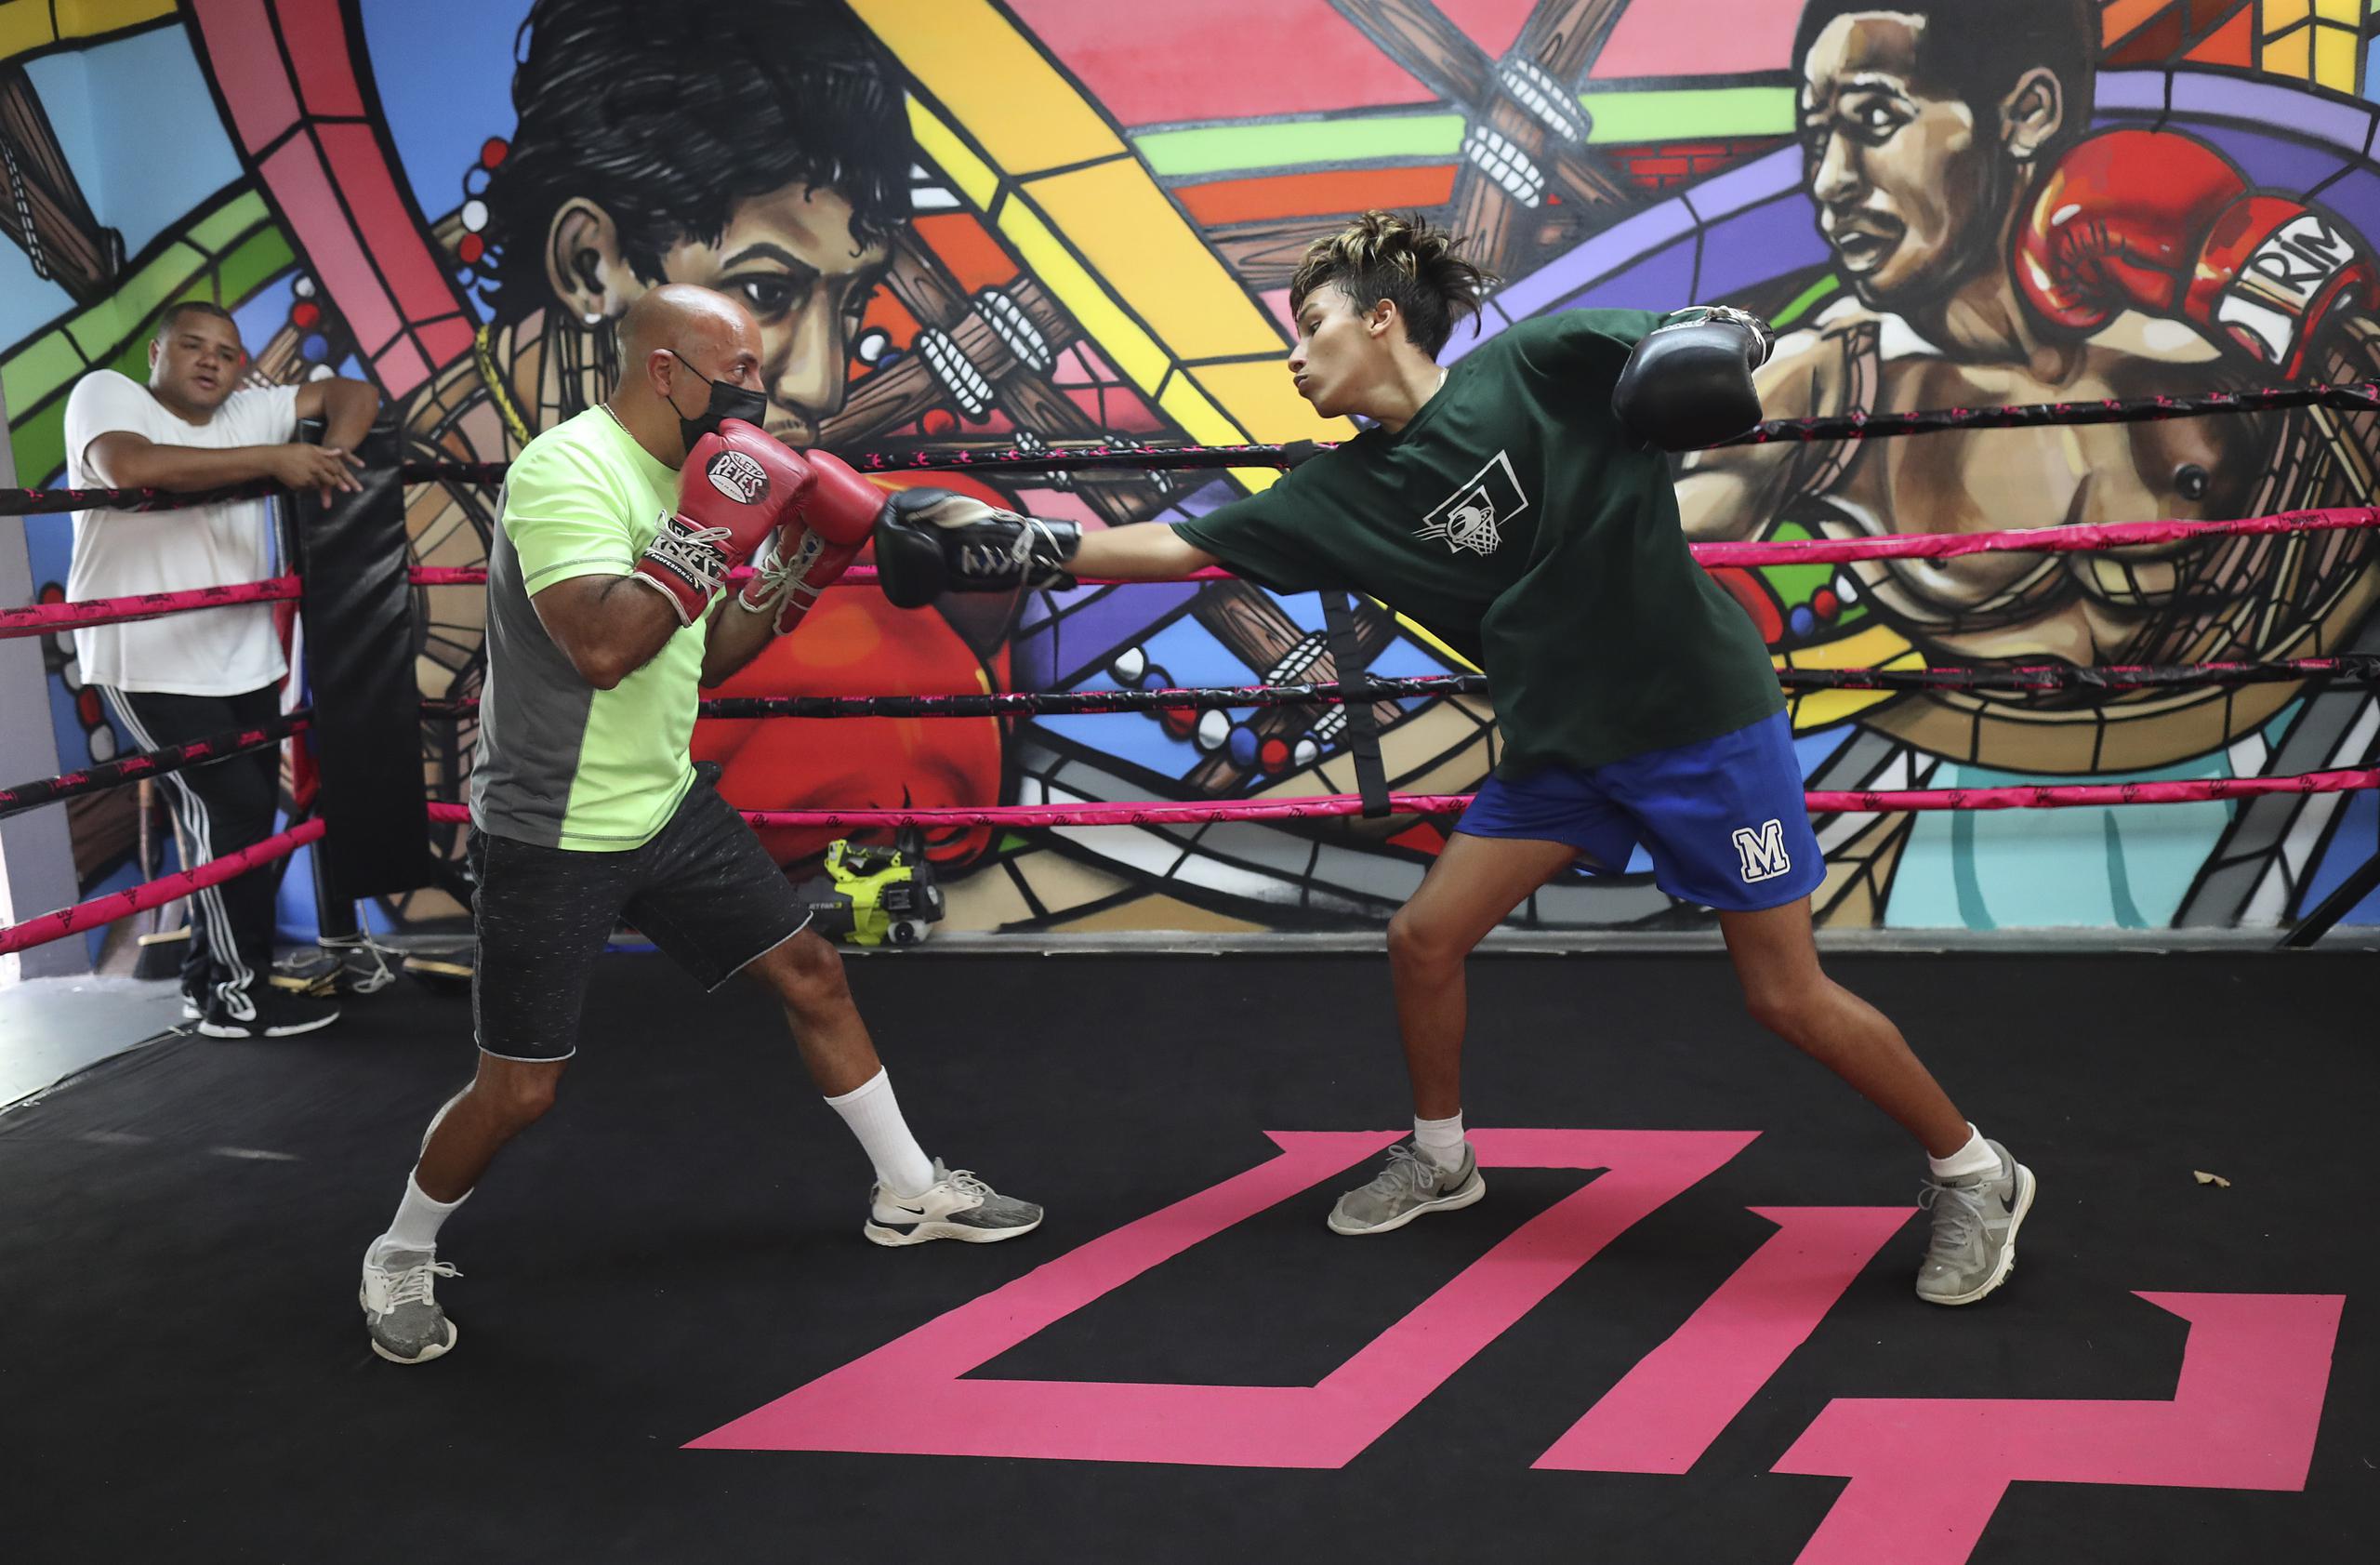 Ian Sebastián Velázquez entrena junto a su padre Luis Alberto en el gimnasio Monterrey Boxing Club.

